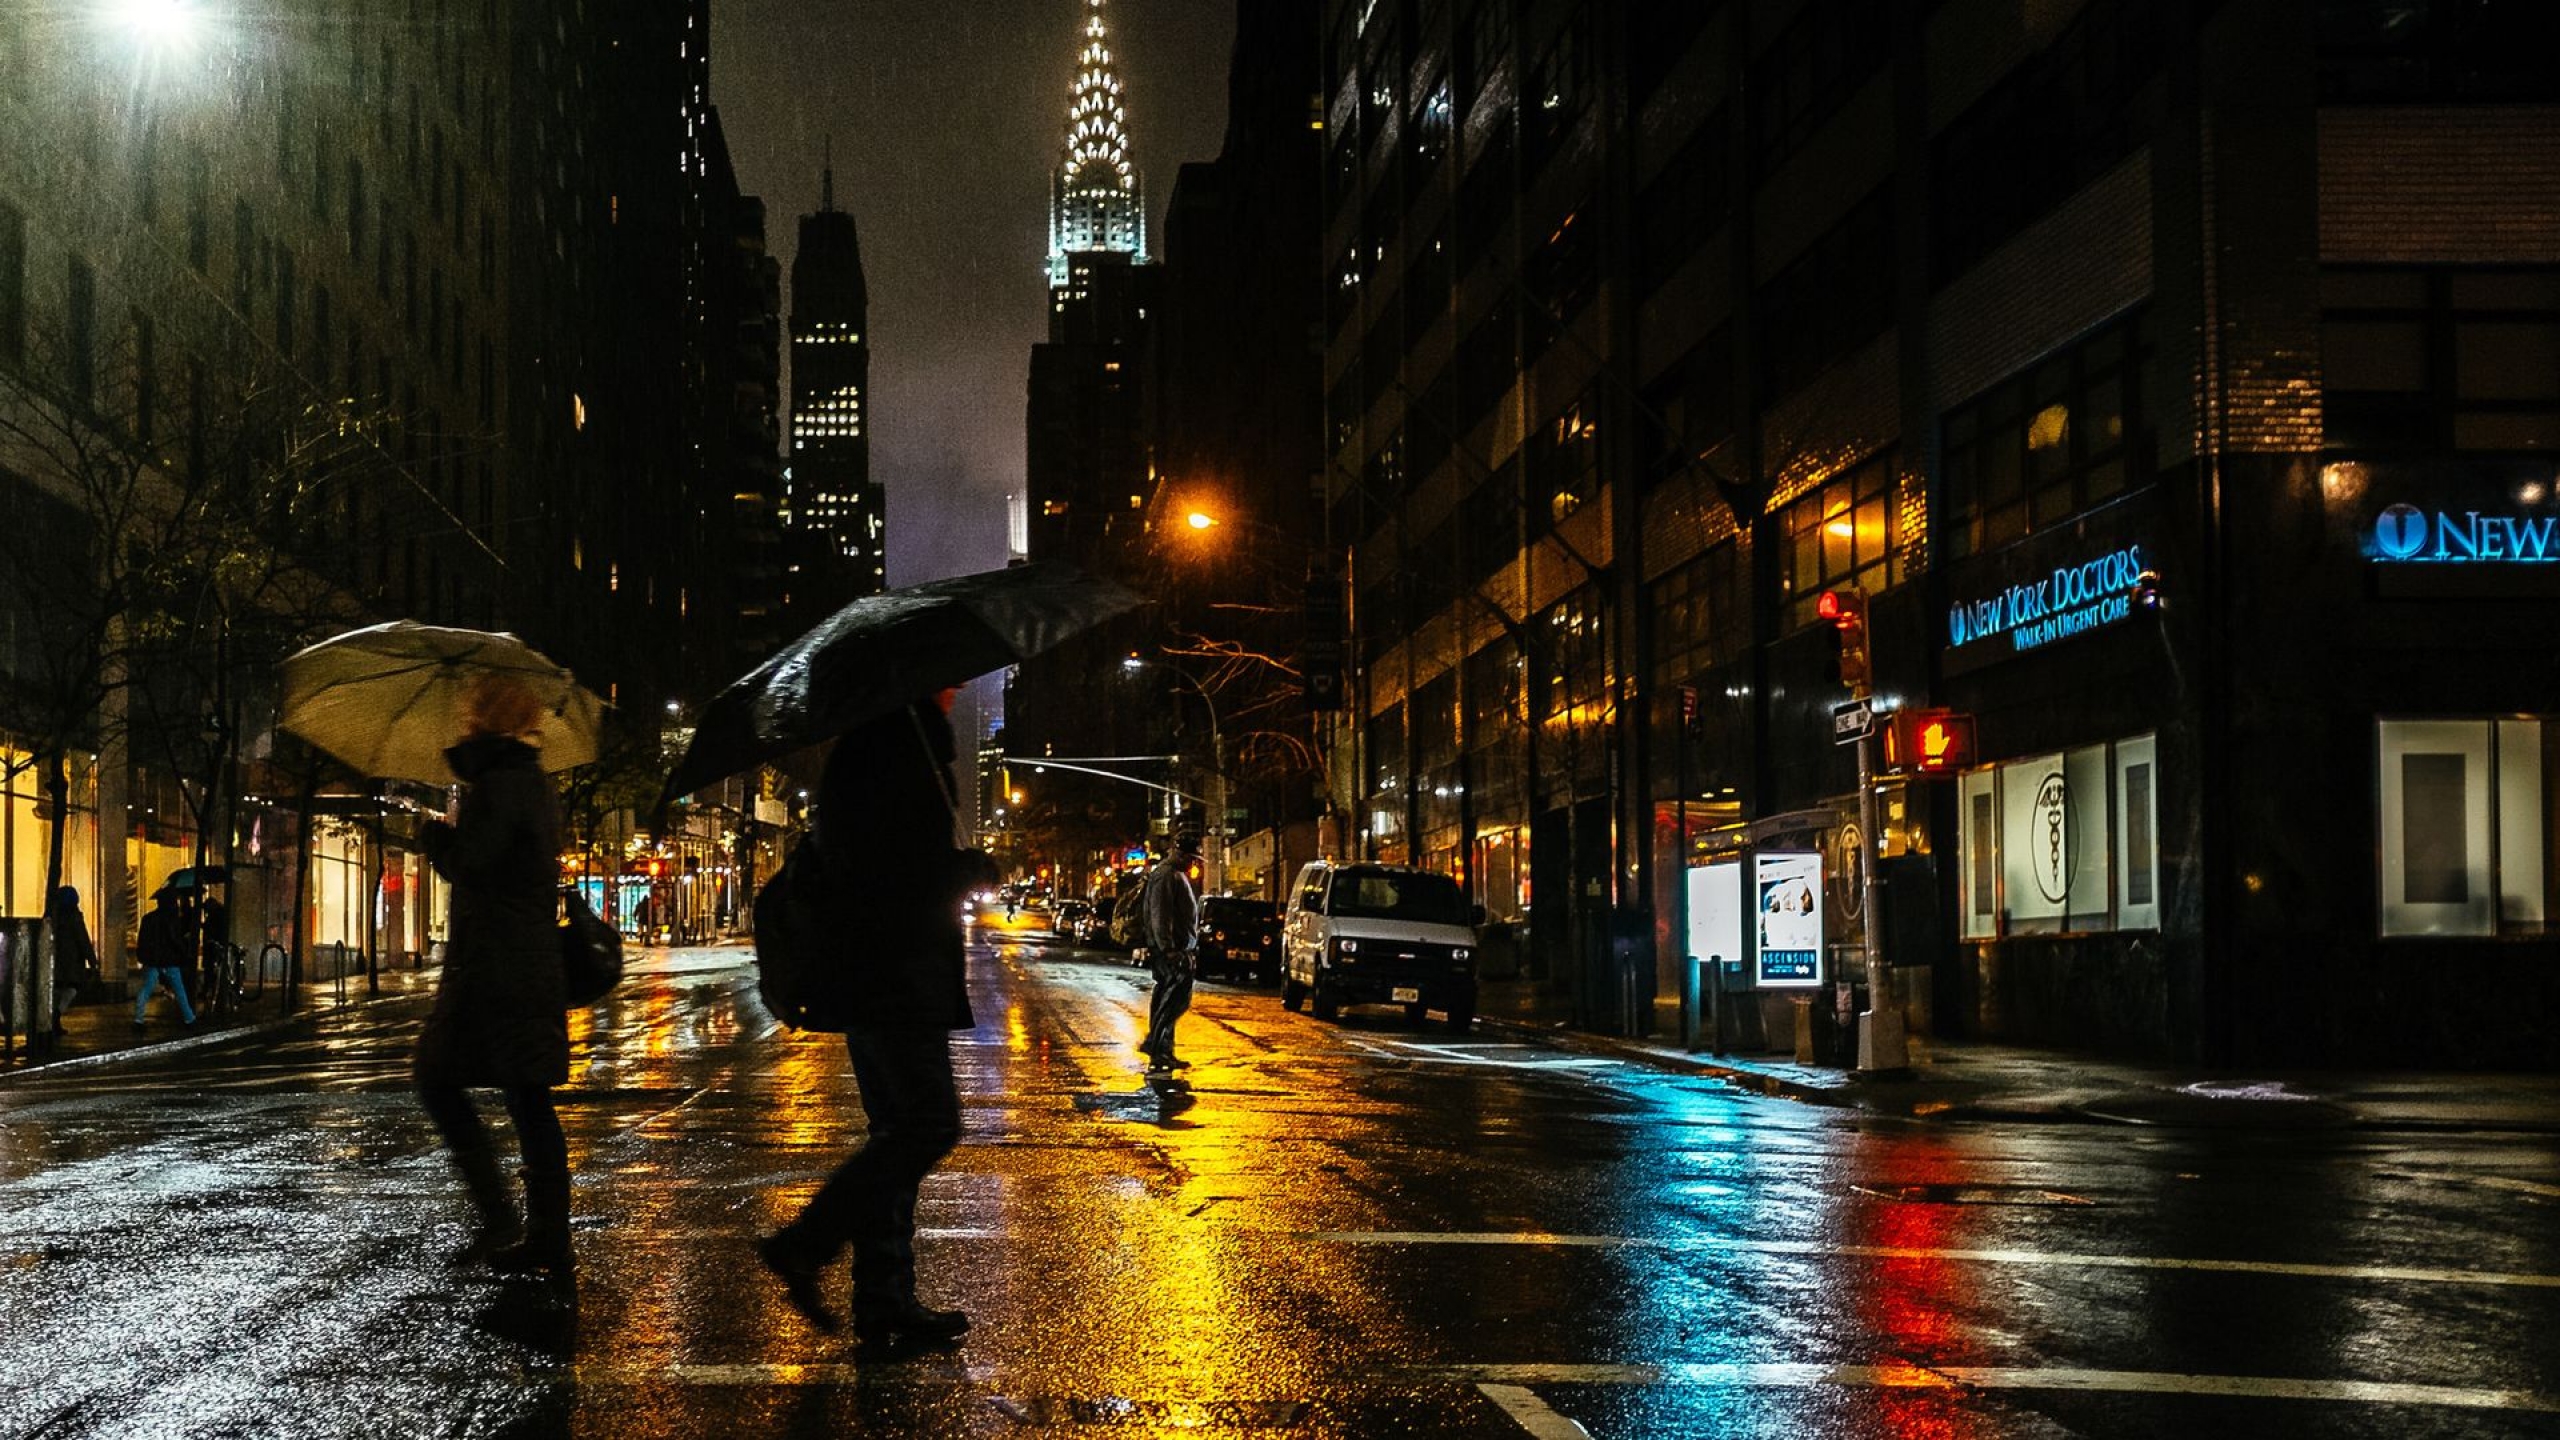 9 вечера на улице. Нью Йорк Найт стрит. Ночной дождливый Нью_ Нью Йорк. Ливень в Нью-Йорке. Нью-Йорк улицы ночью.